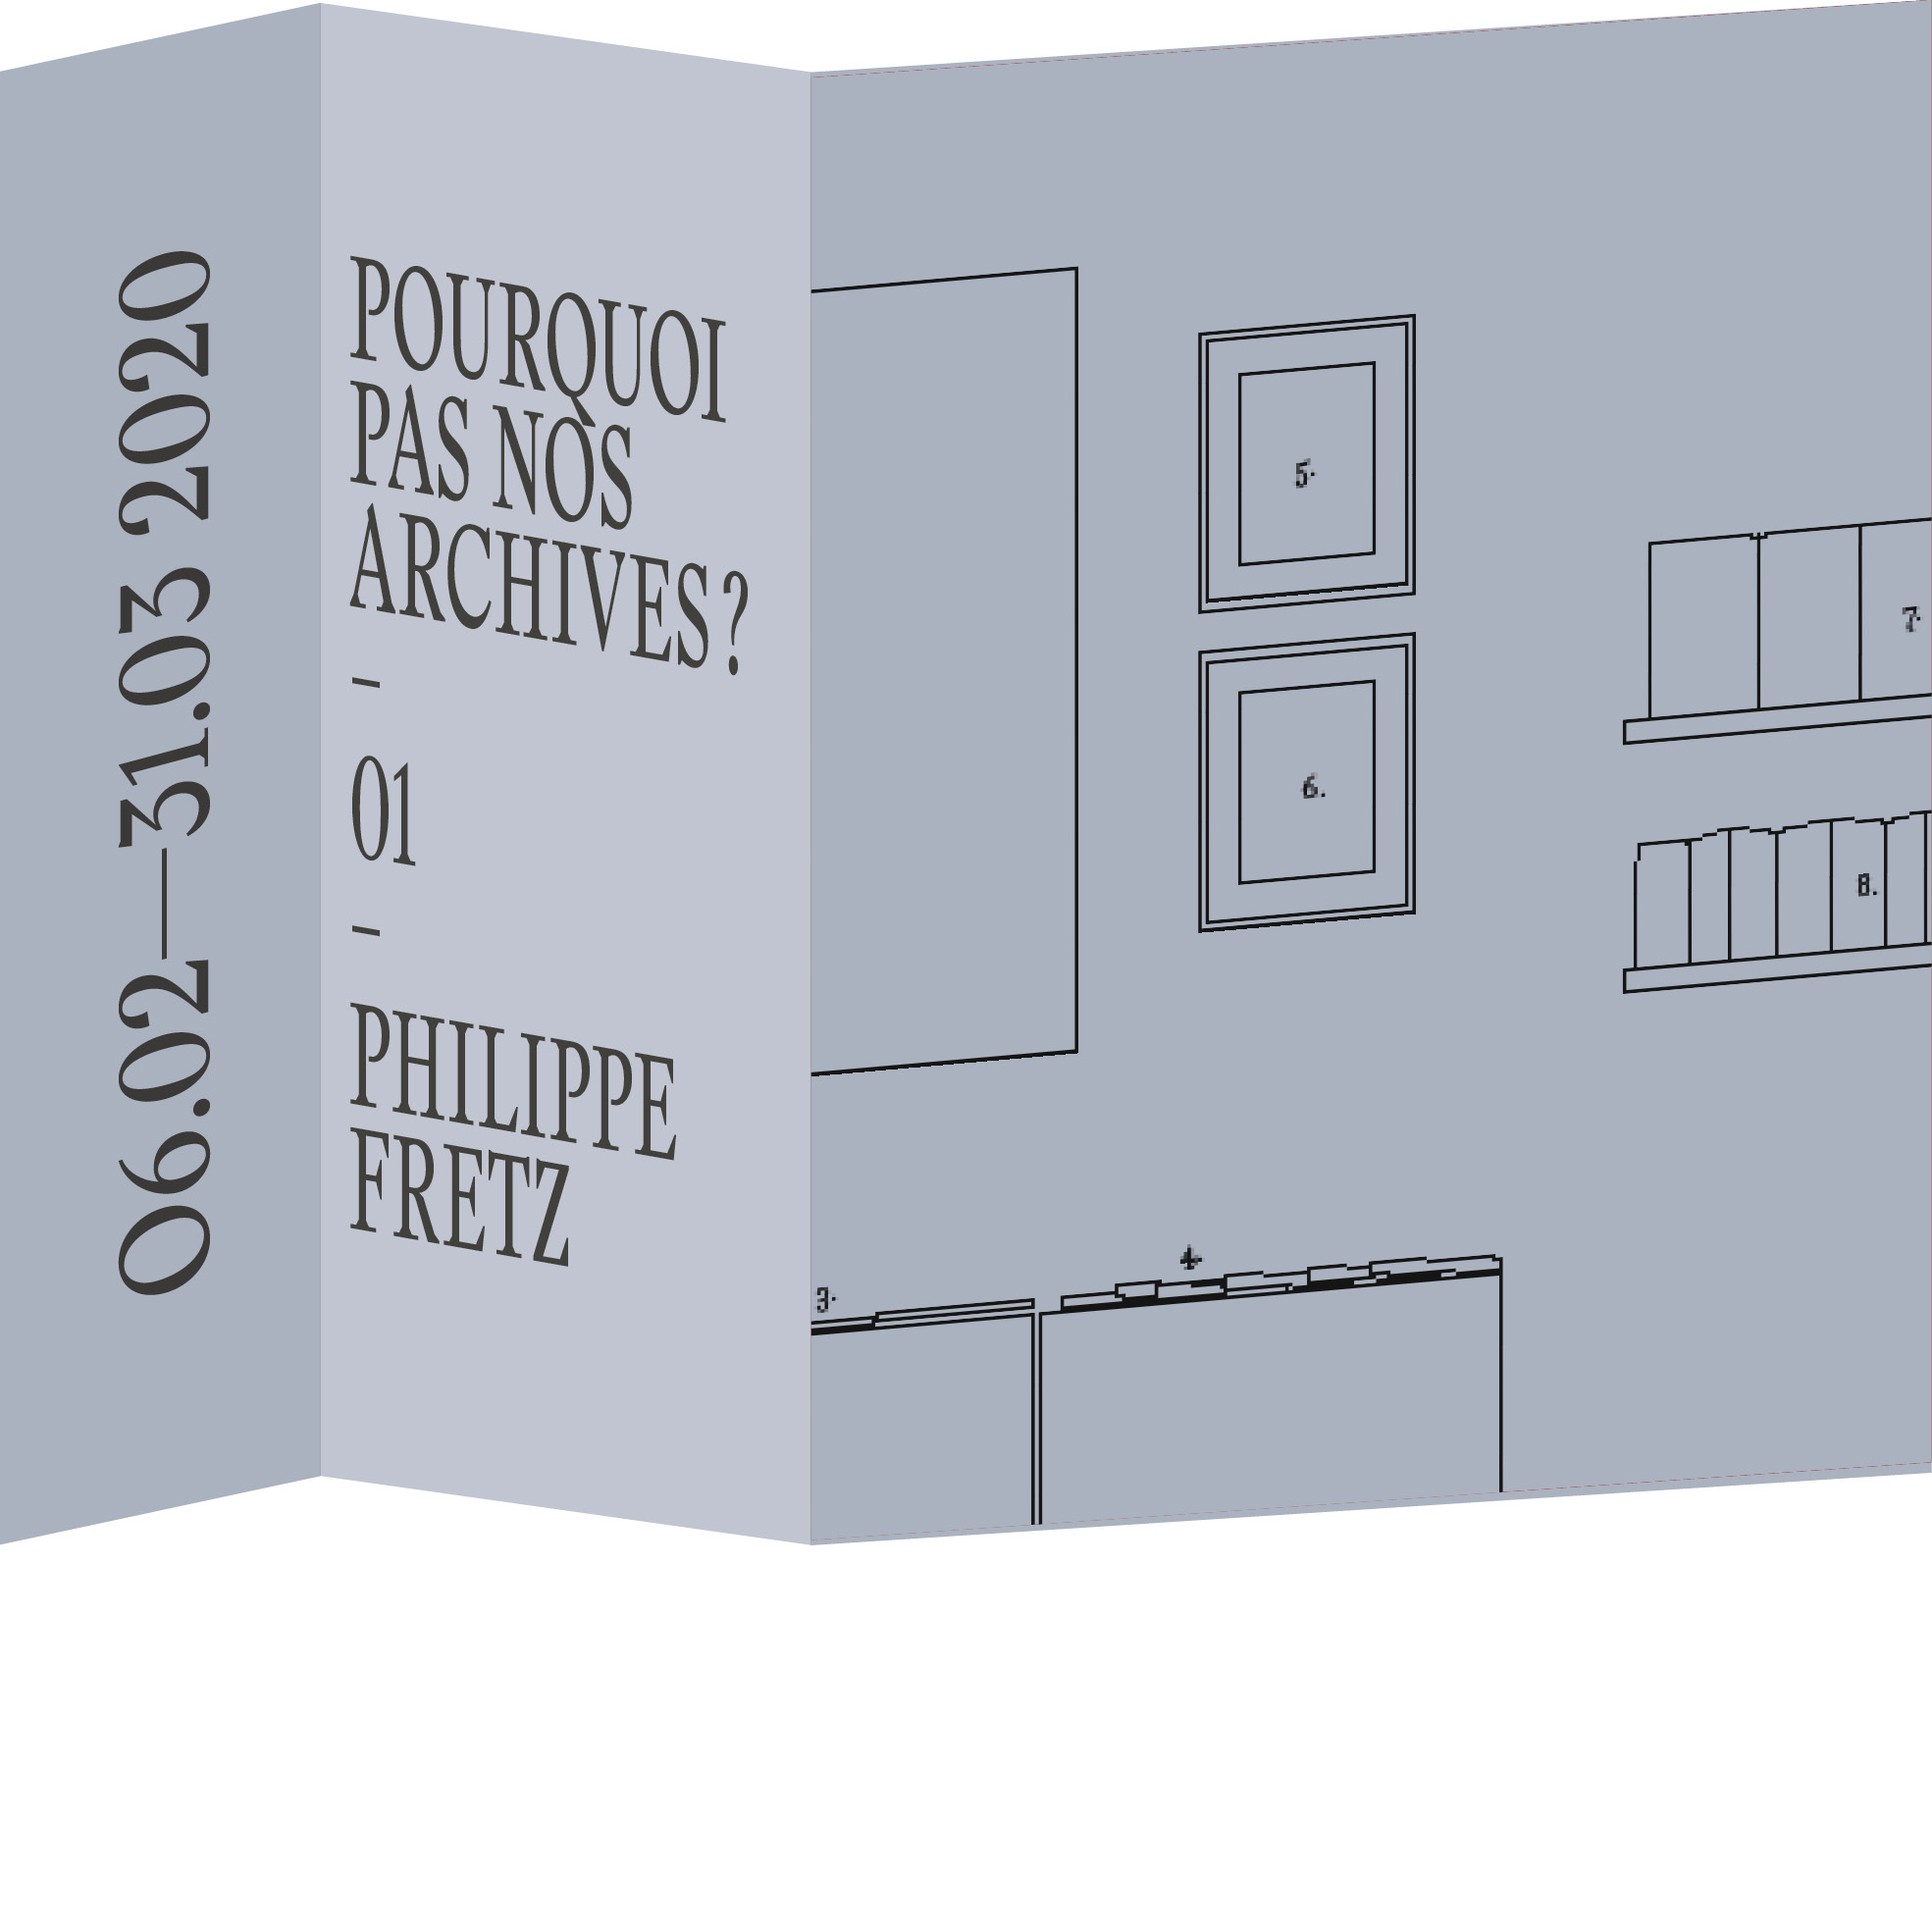 Pourquoi pas nos archives? #1 Philippe Fretz